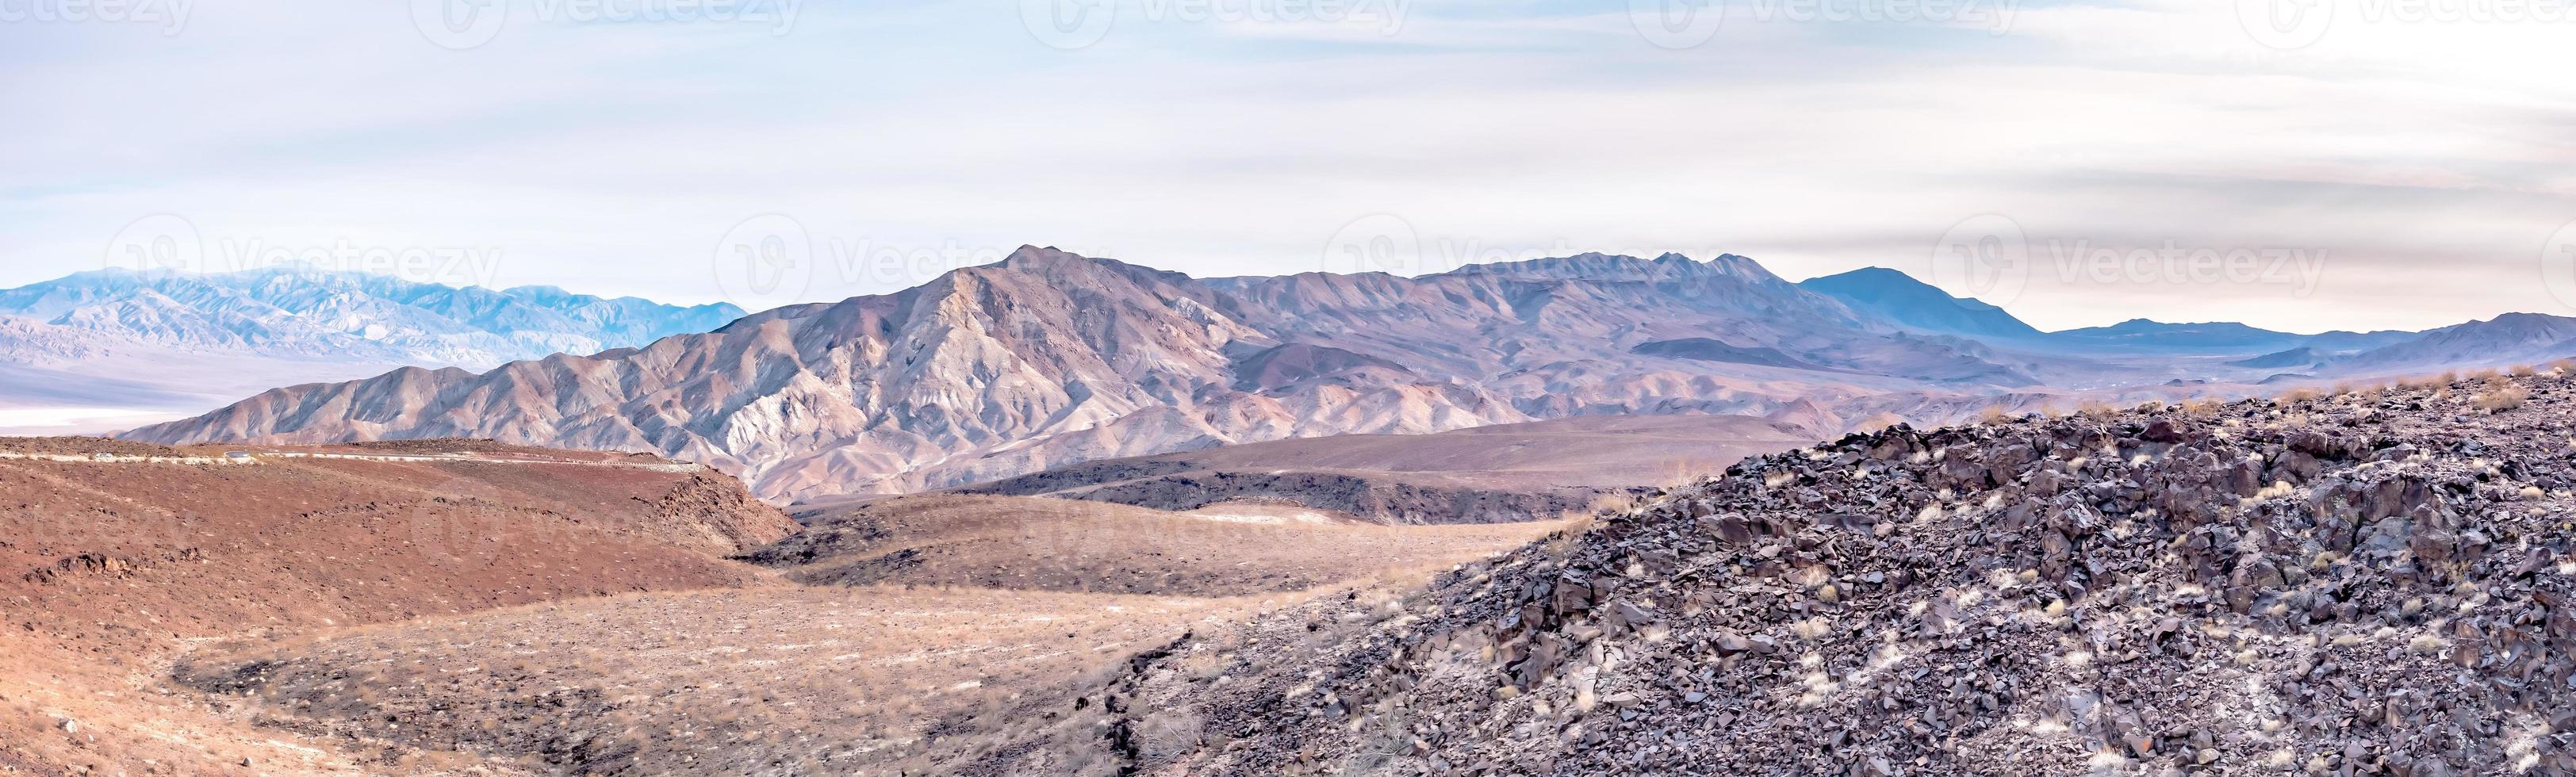 Death Valley National Park på solig dag foto